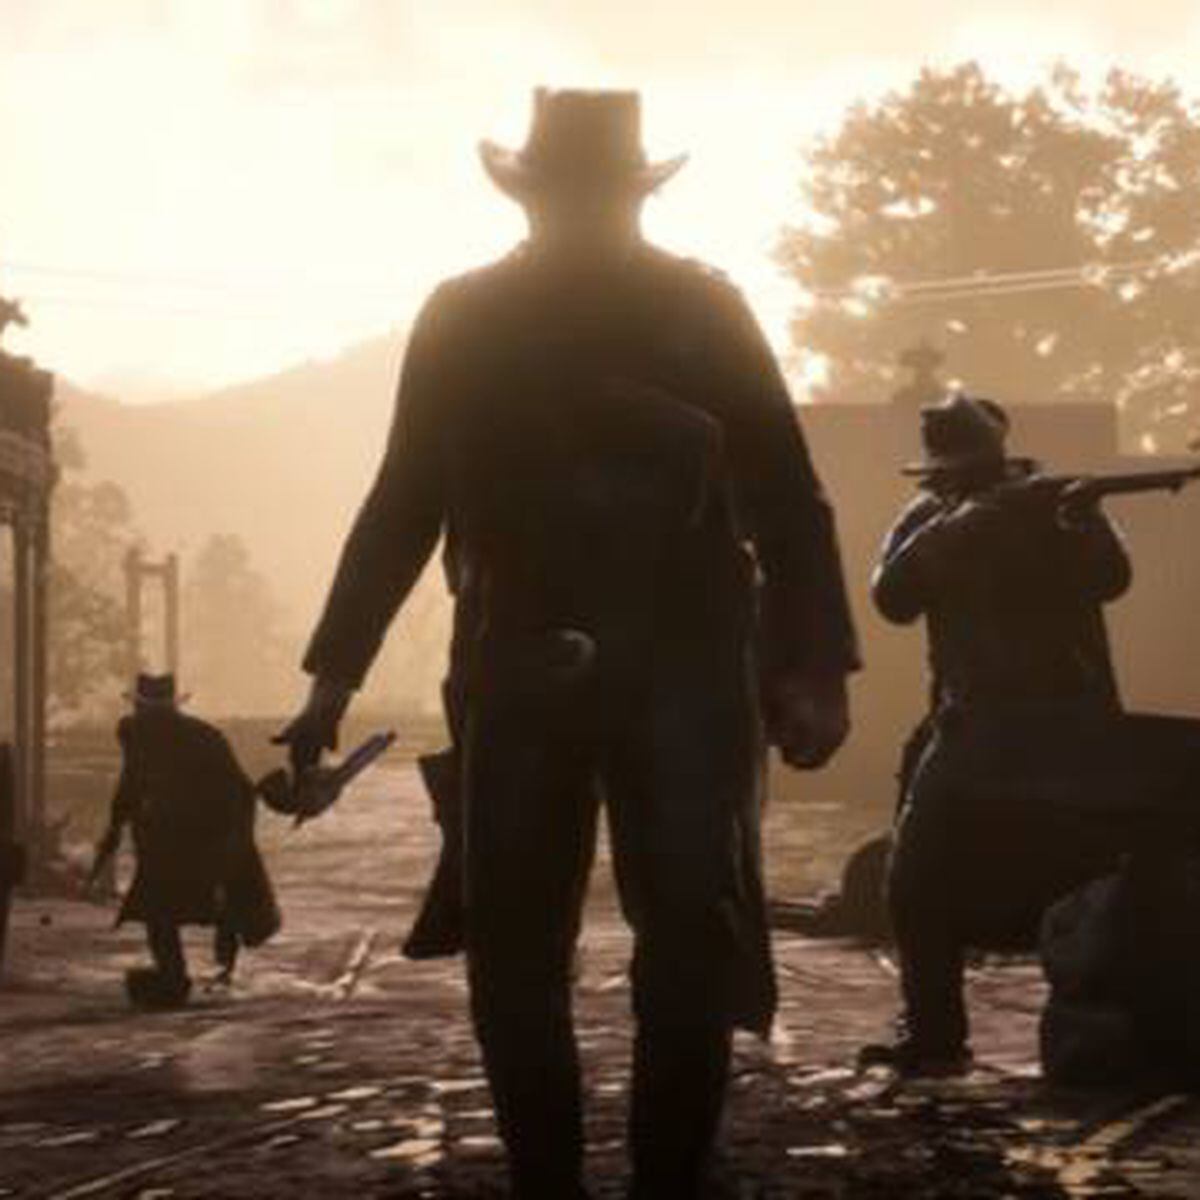 Rockstar ya sabe por dónde pasa el futuro de 'Red Dead Redemption